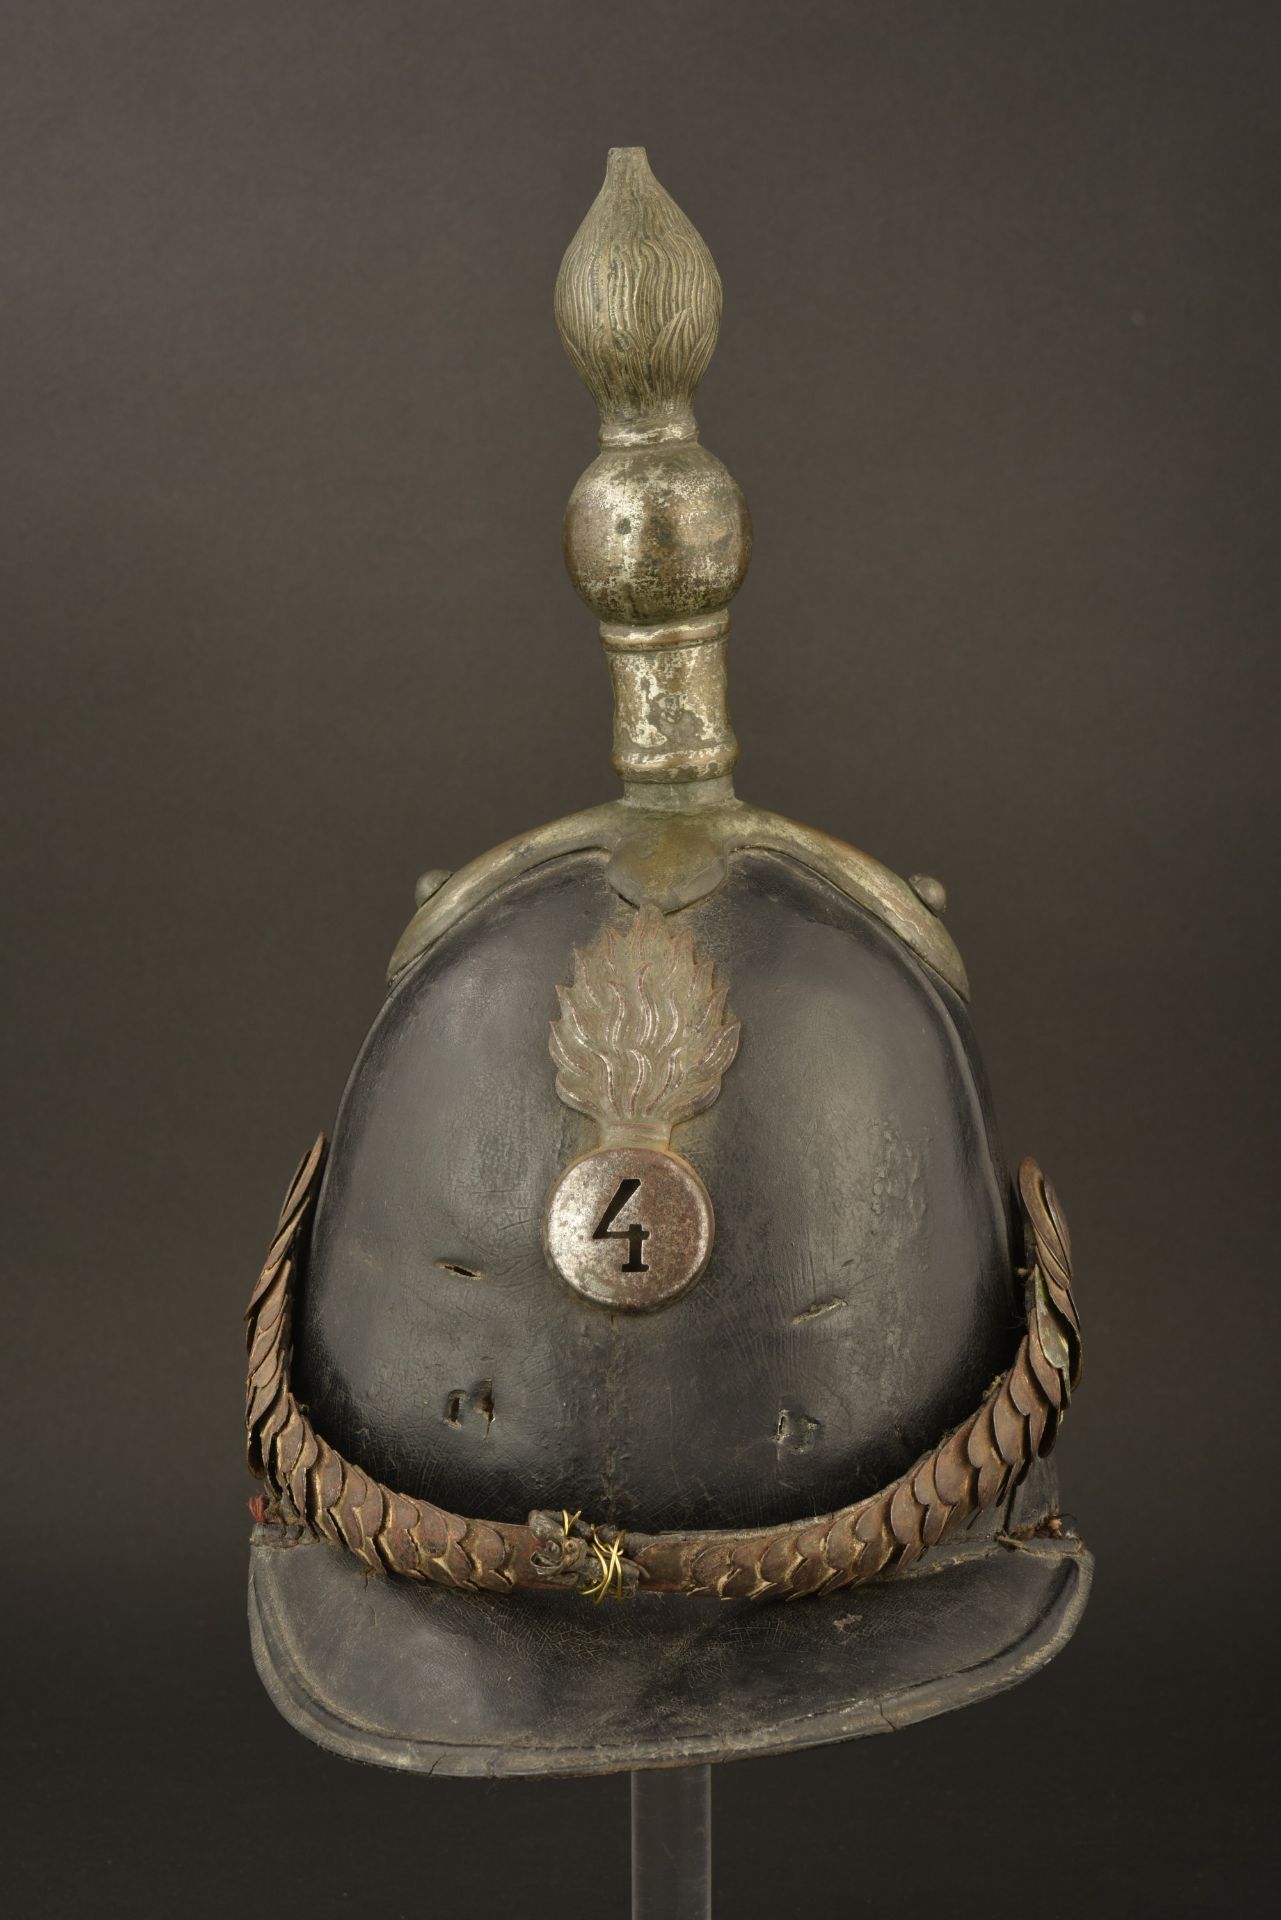 Casque russe mod. 1844 Brigade Artillerie Garnison. Russian helmet pat. 1844 Garrison Artillery Brig